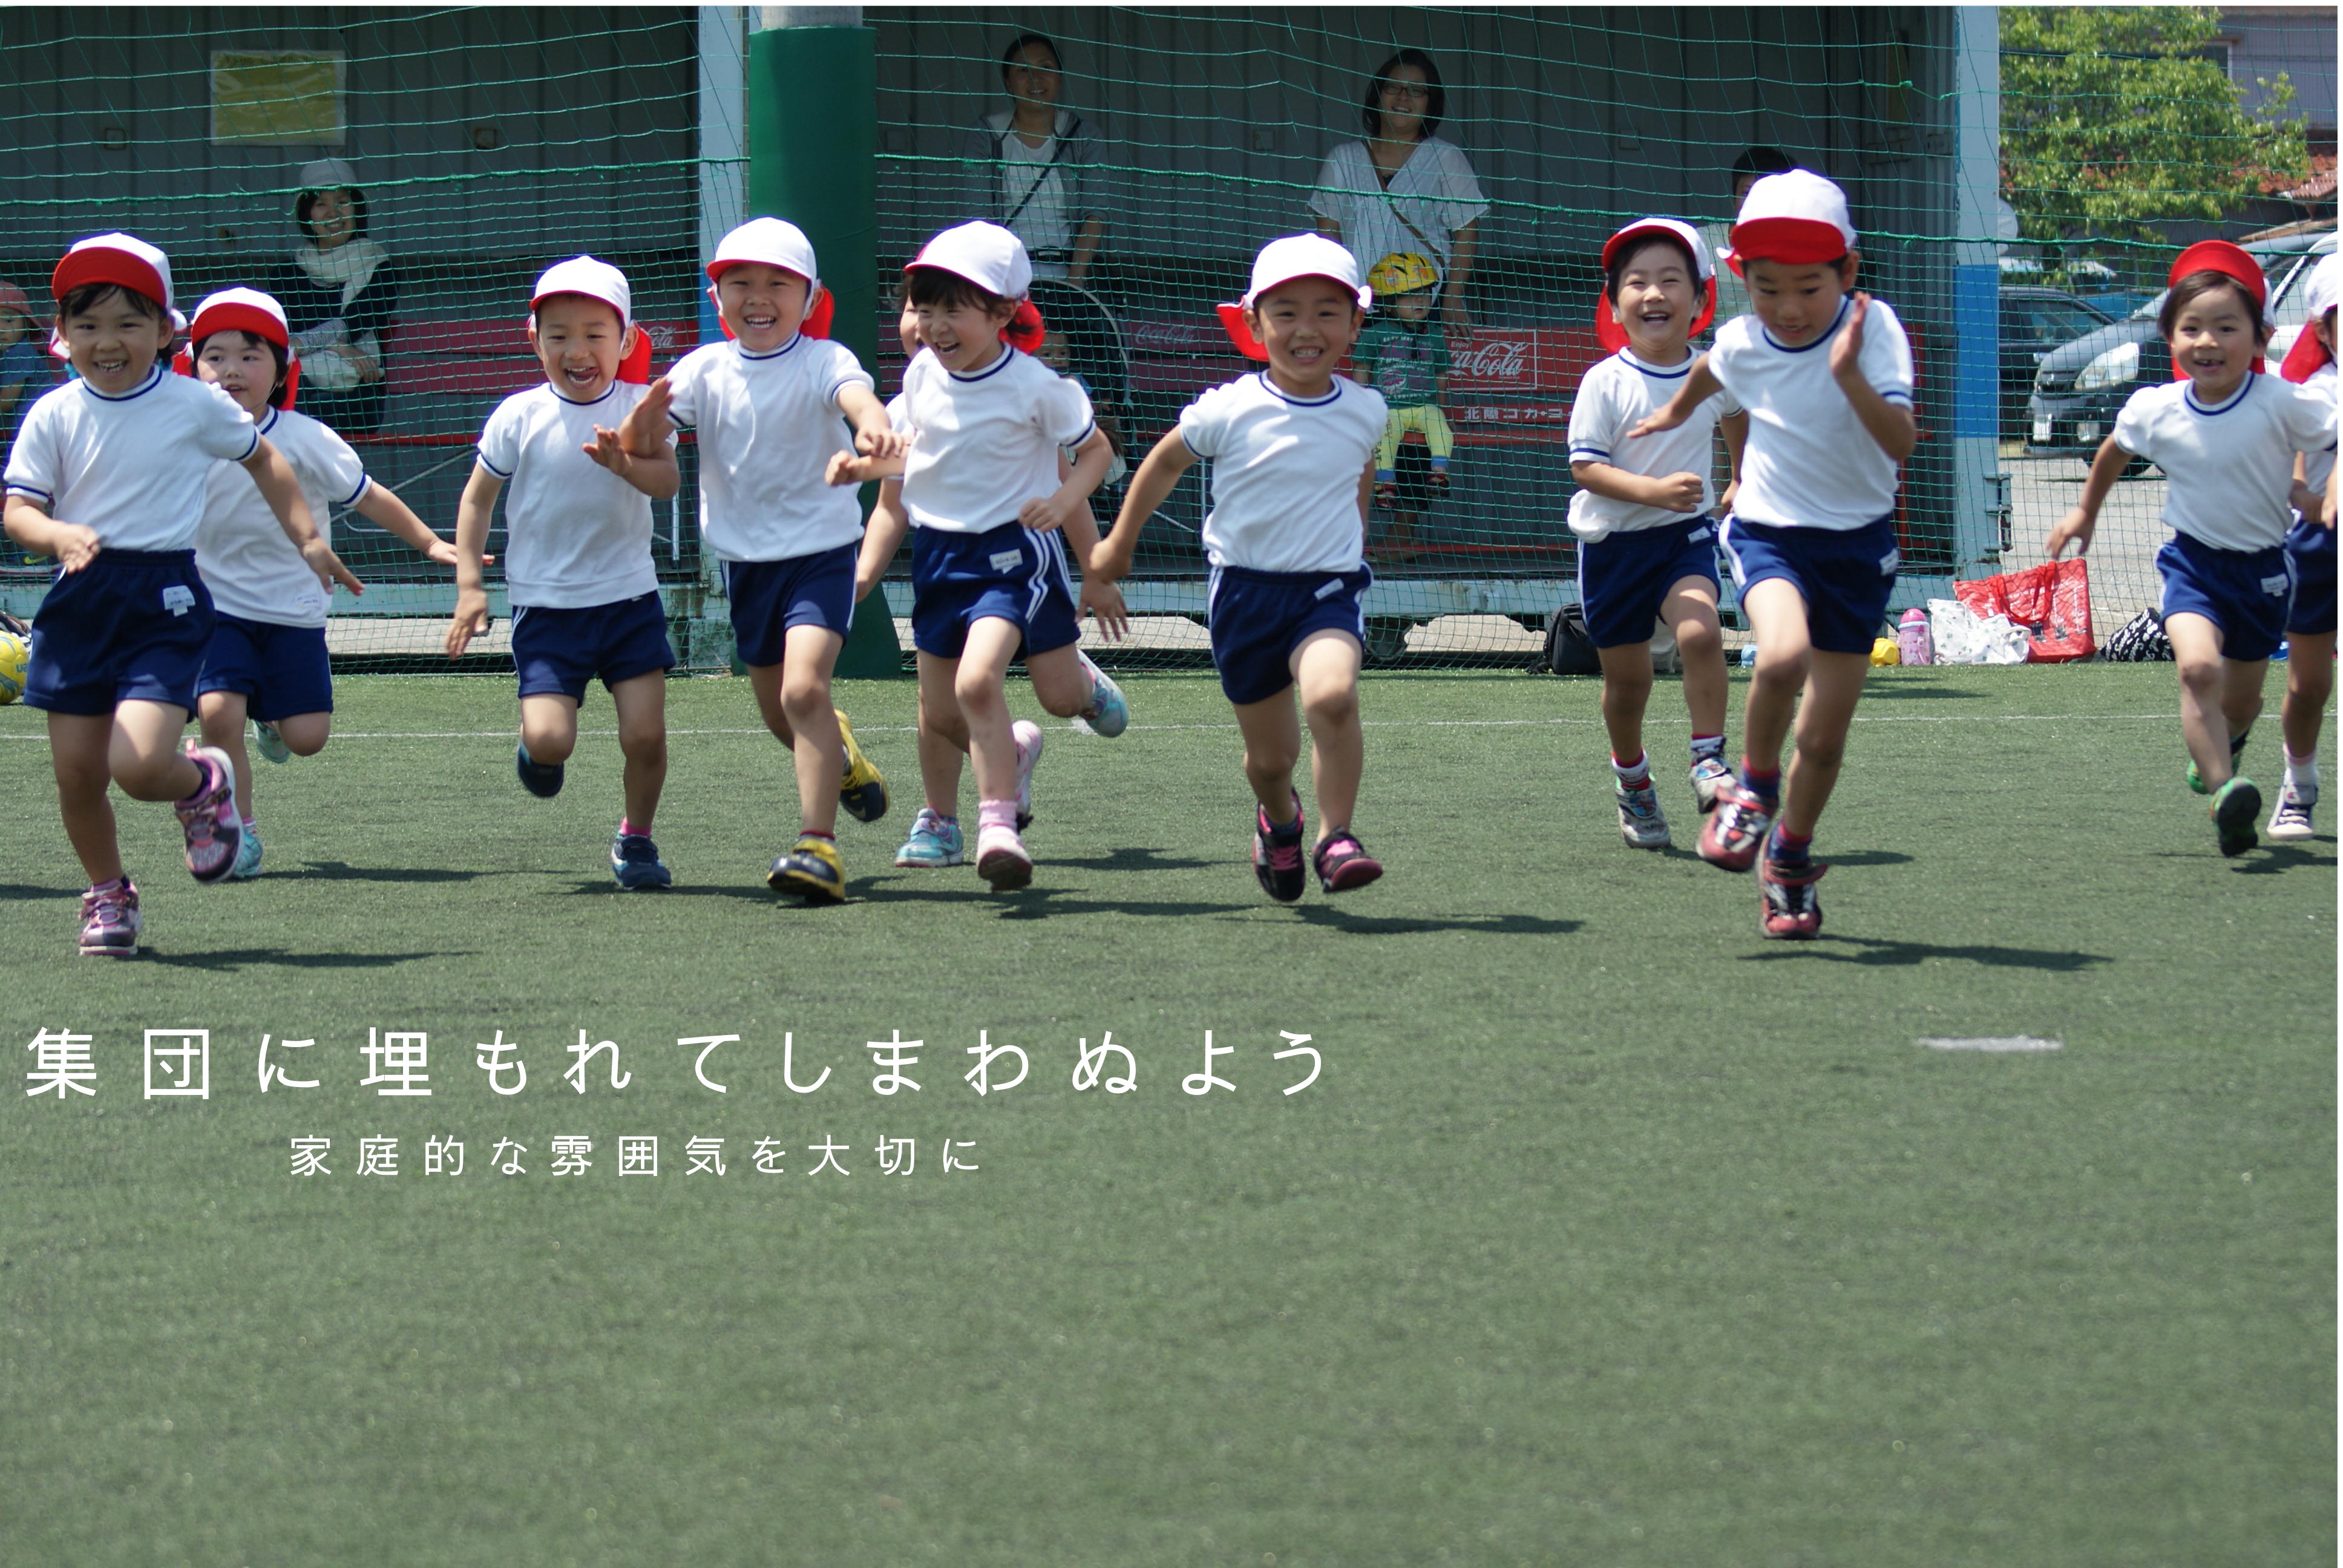 なかよし幼稚園 なかよし幼稚園は 石川県小松市にあるアットホームな幼稚園です